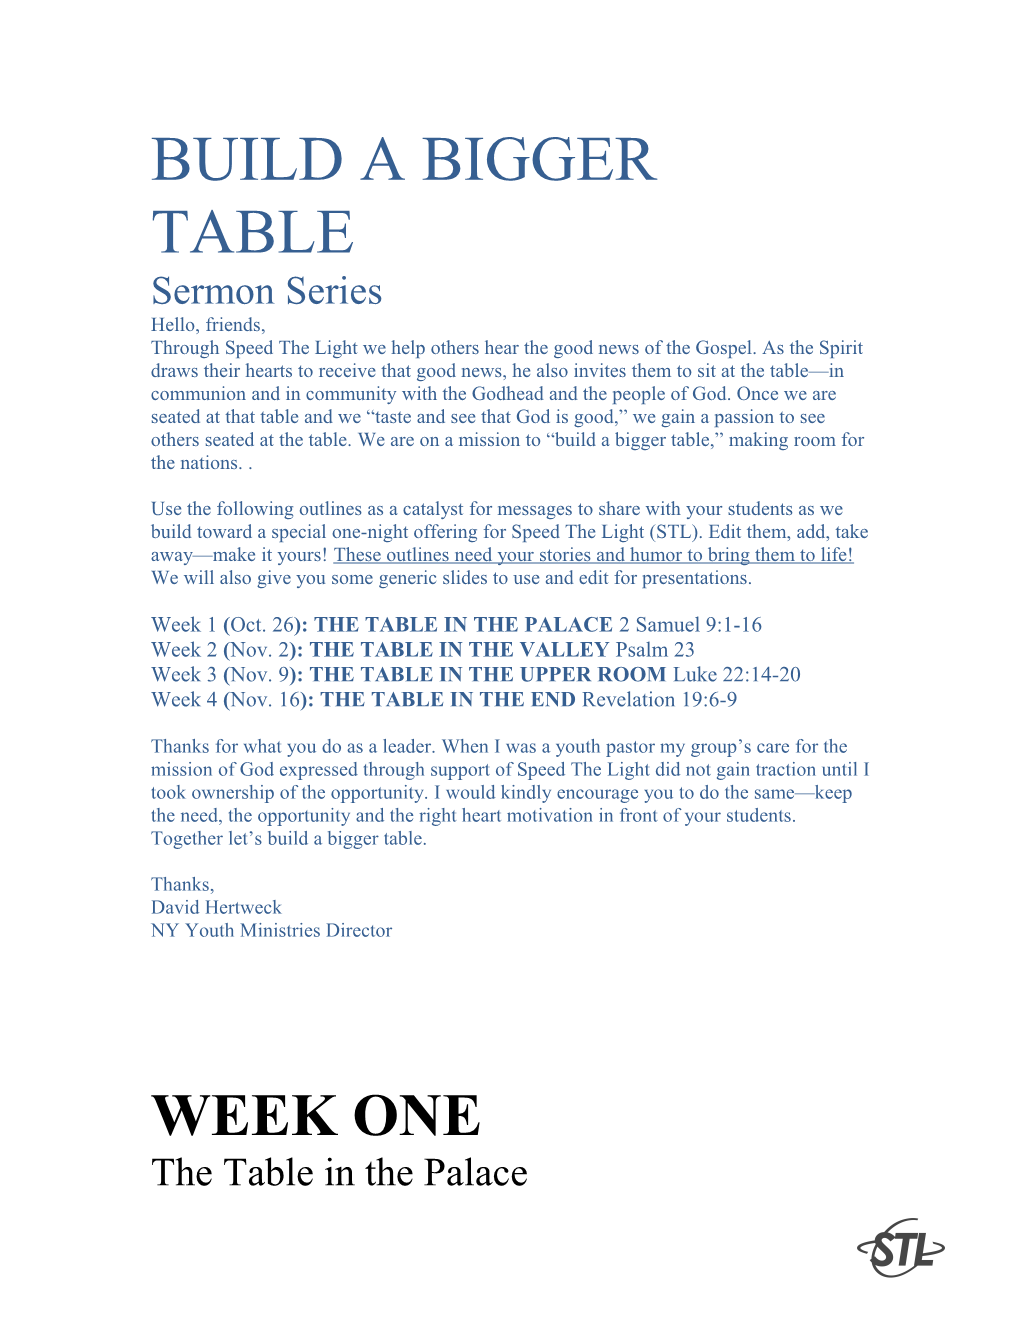 Build a Bigger Table